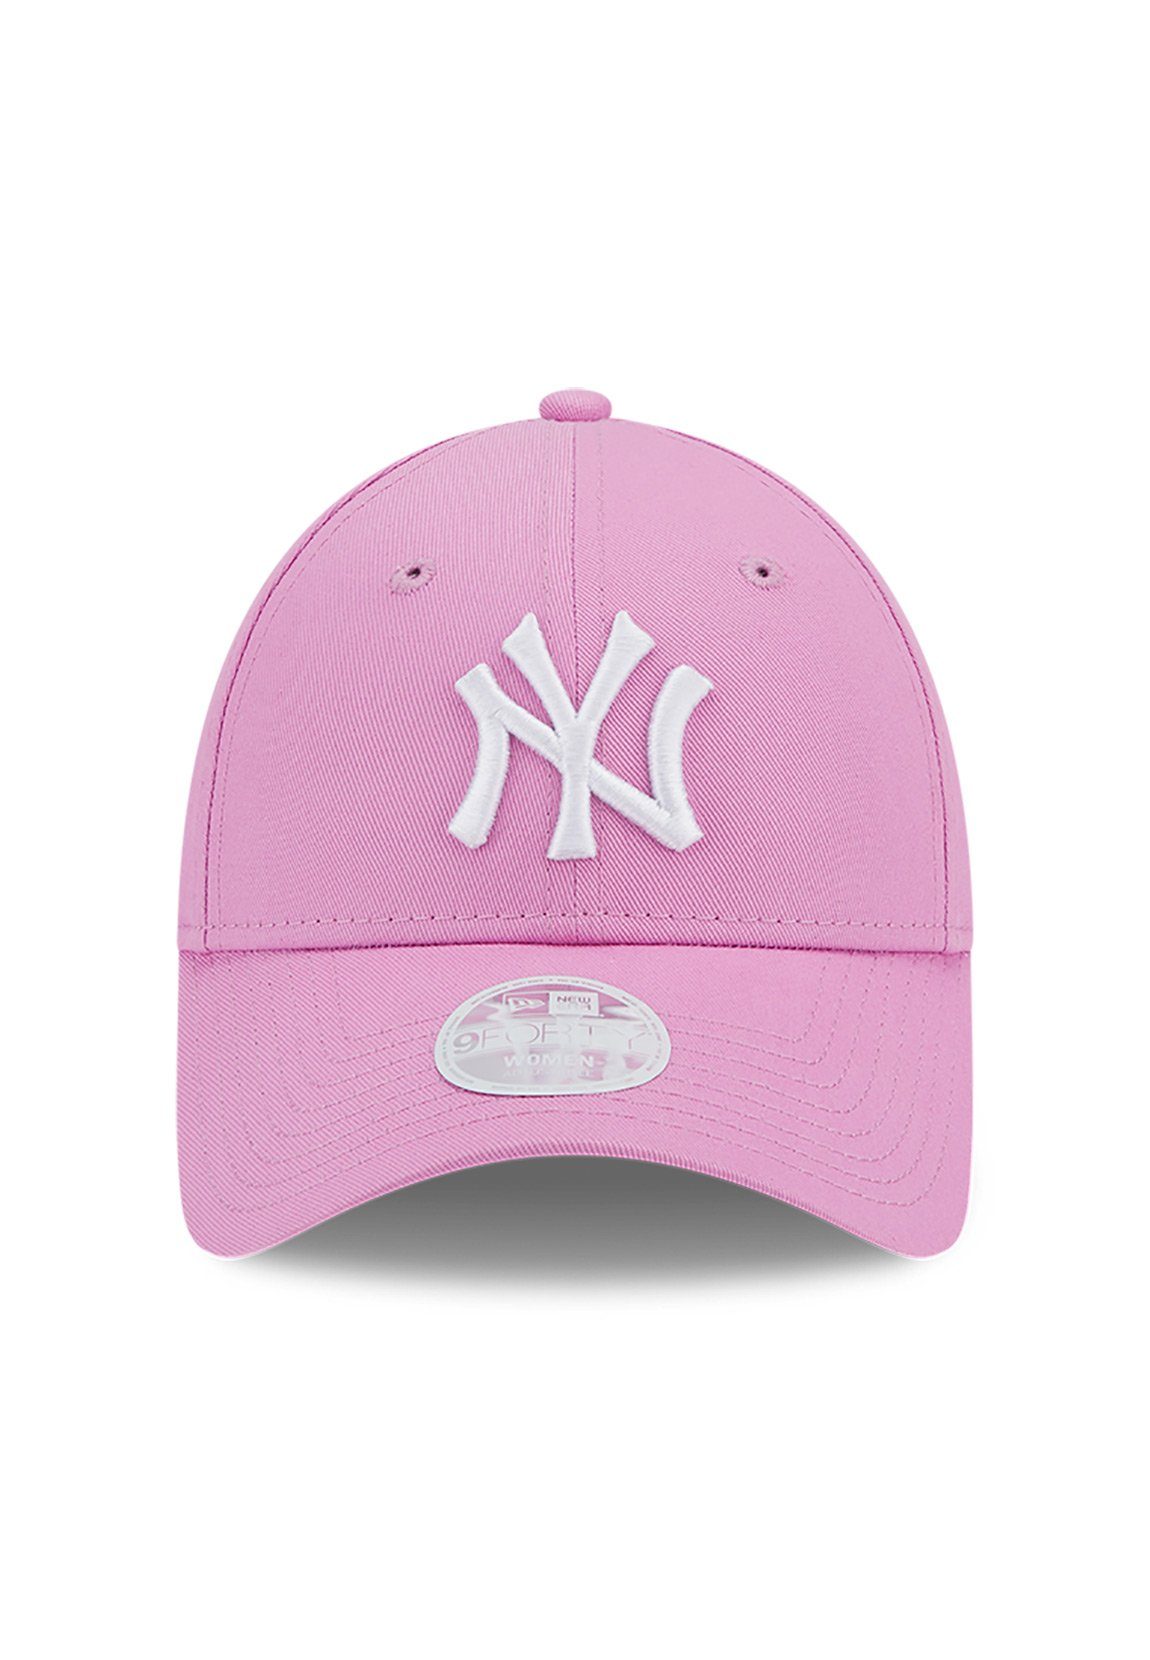 New Era Baseball Cap New Ess Cap Pink Damen 9Forty rosa YANKEES Wmns League NY Era Adjustable